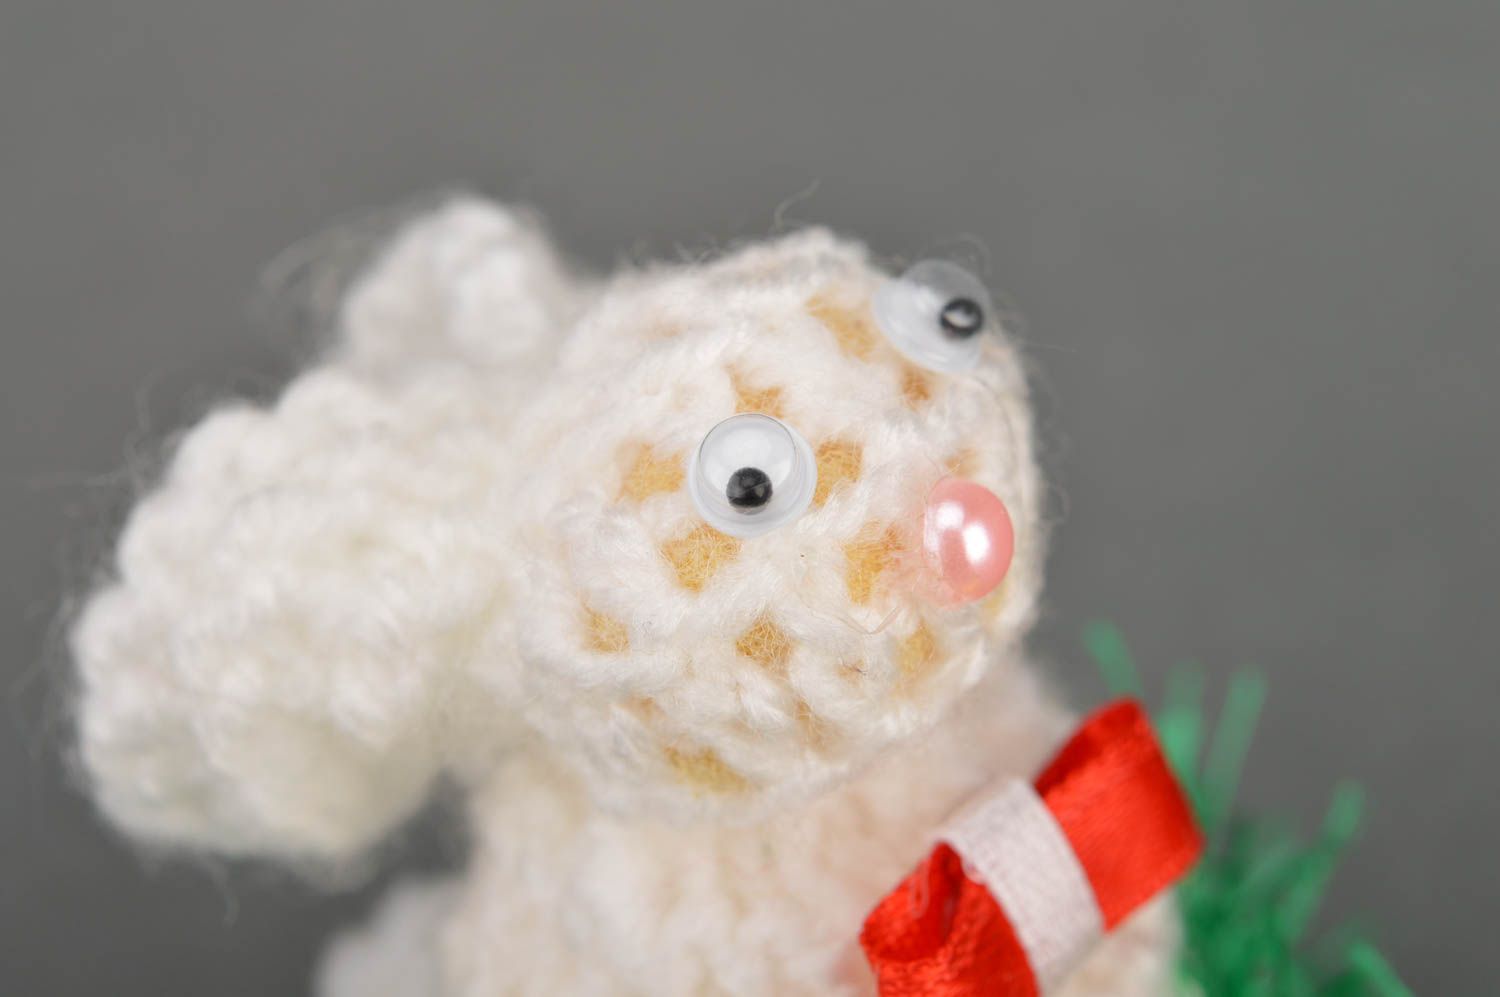 Petit jouet mou tricoté fait main tricoté au crochet décoration pour Pâques photo 4